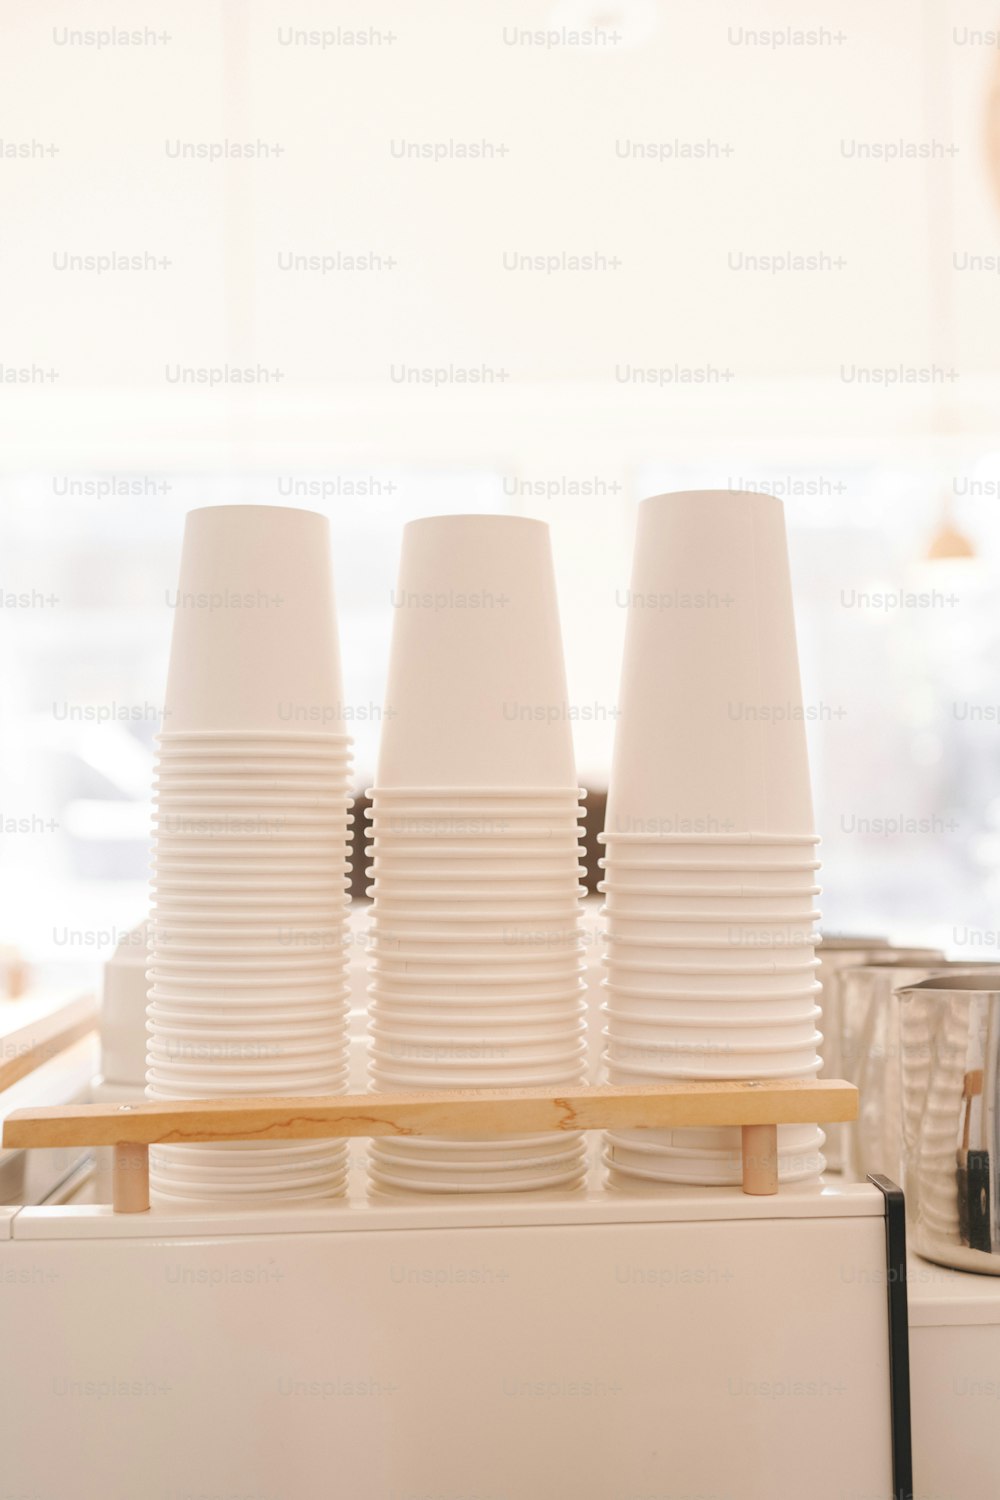 카운터 위에 앉아 있는 하얀 컵들